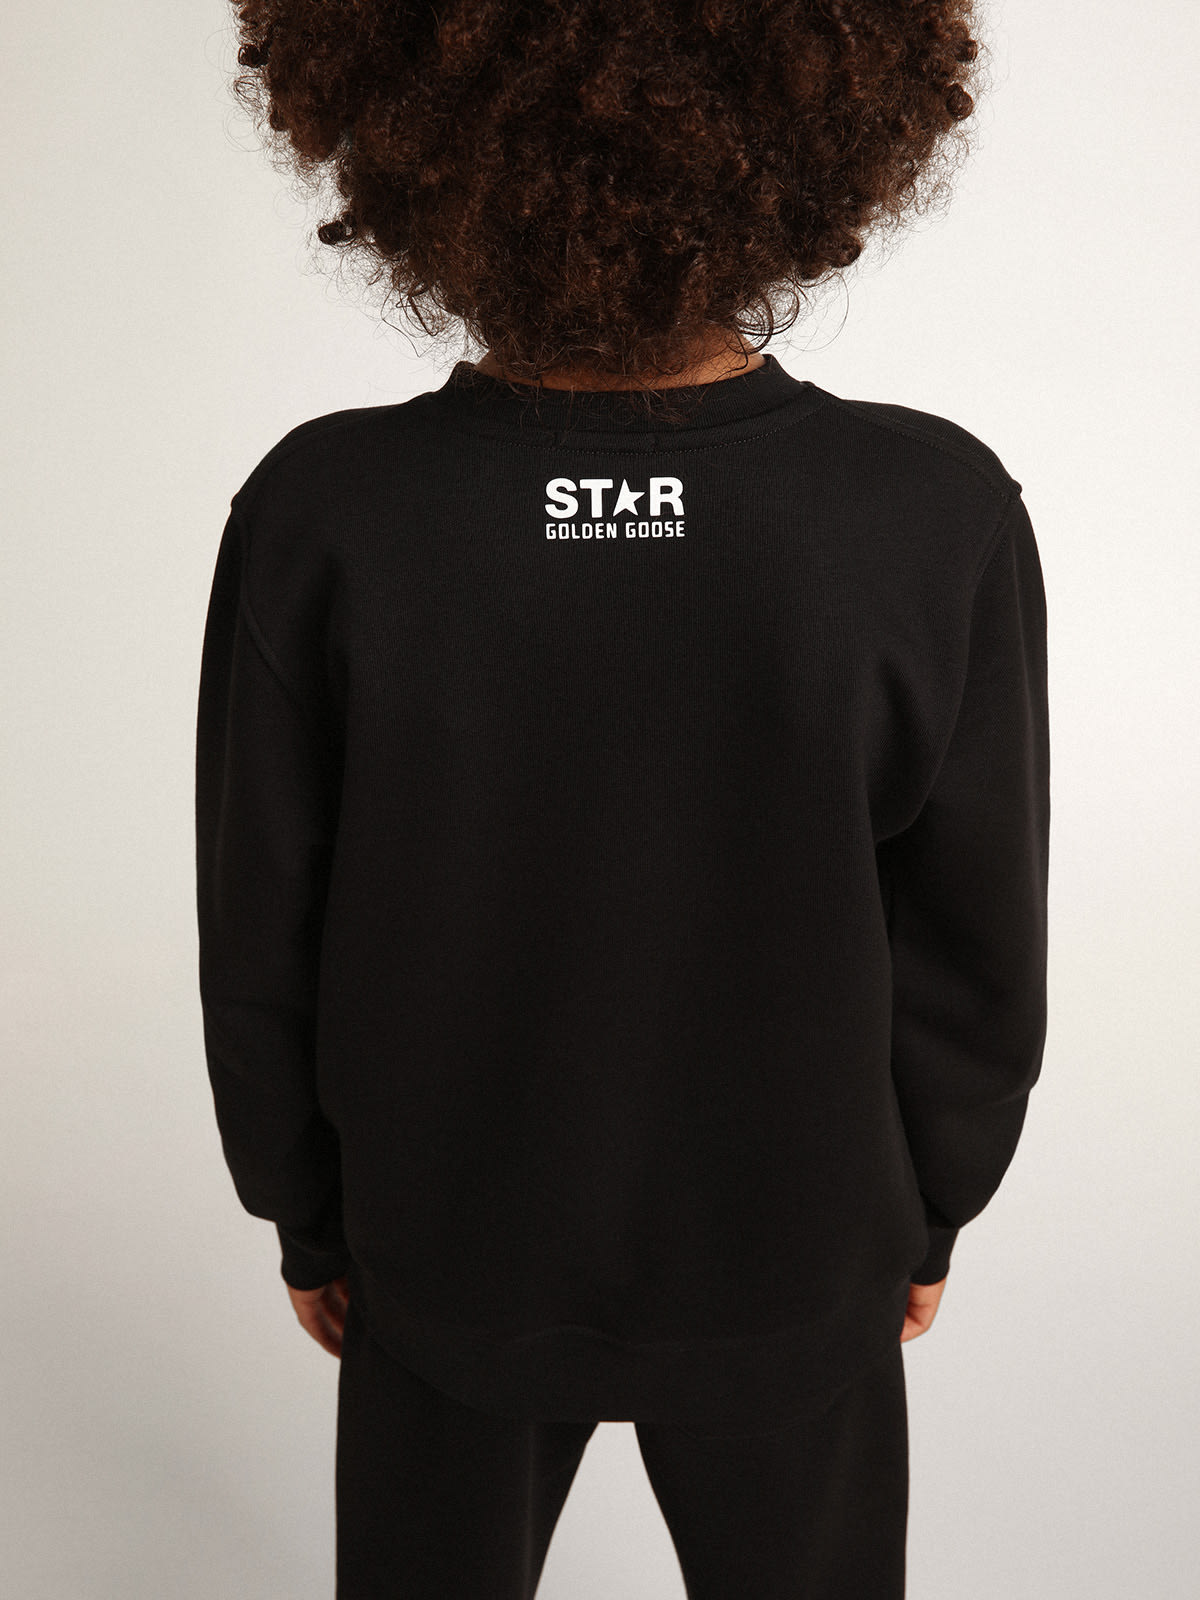 Golden Goose - Sweat-shirt noir collection Star avec grande étoile blanche sur le devant in 